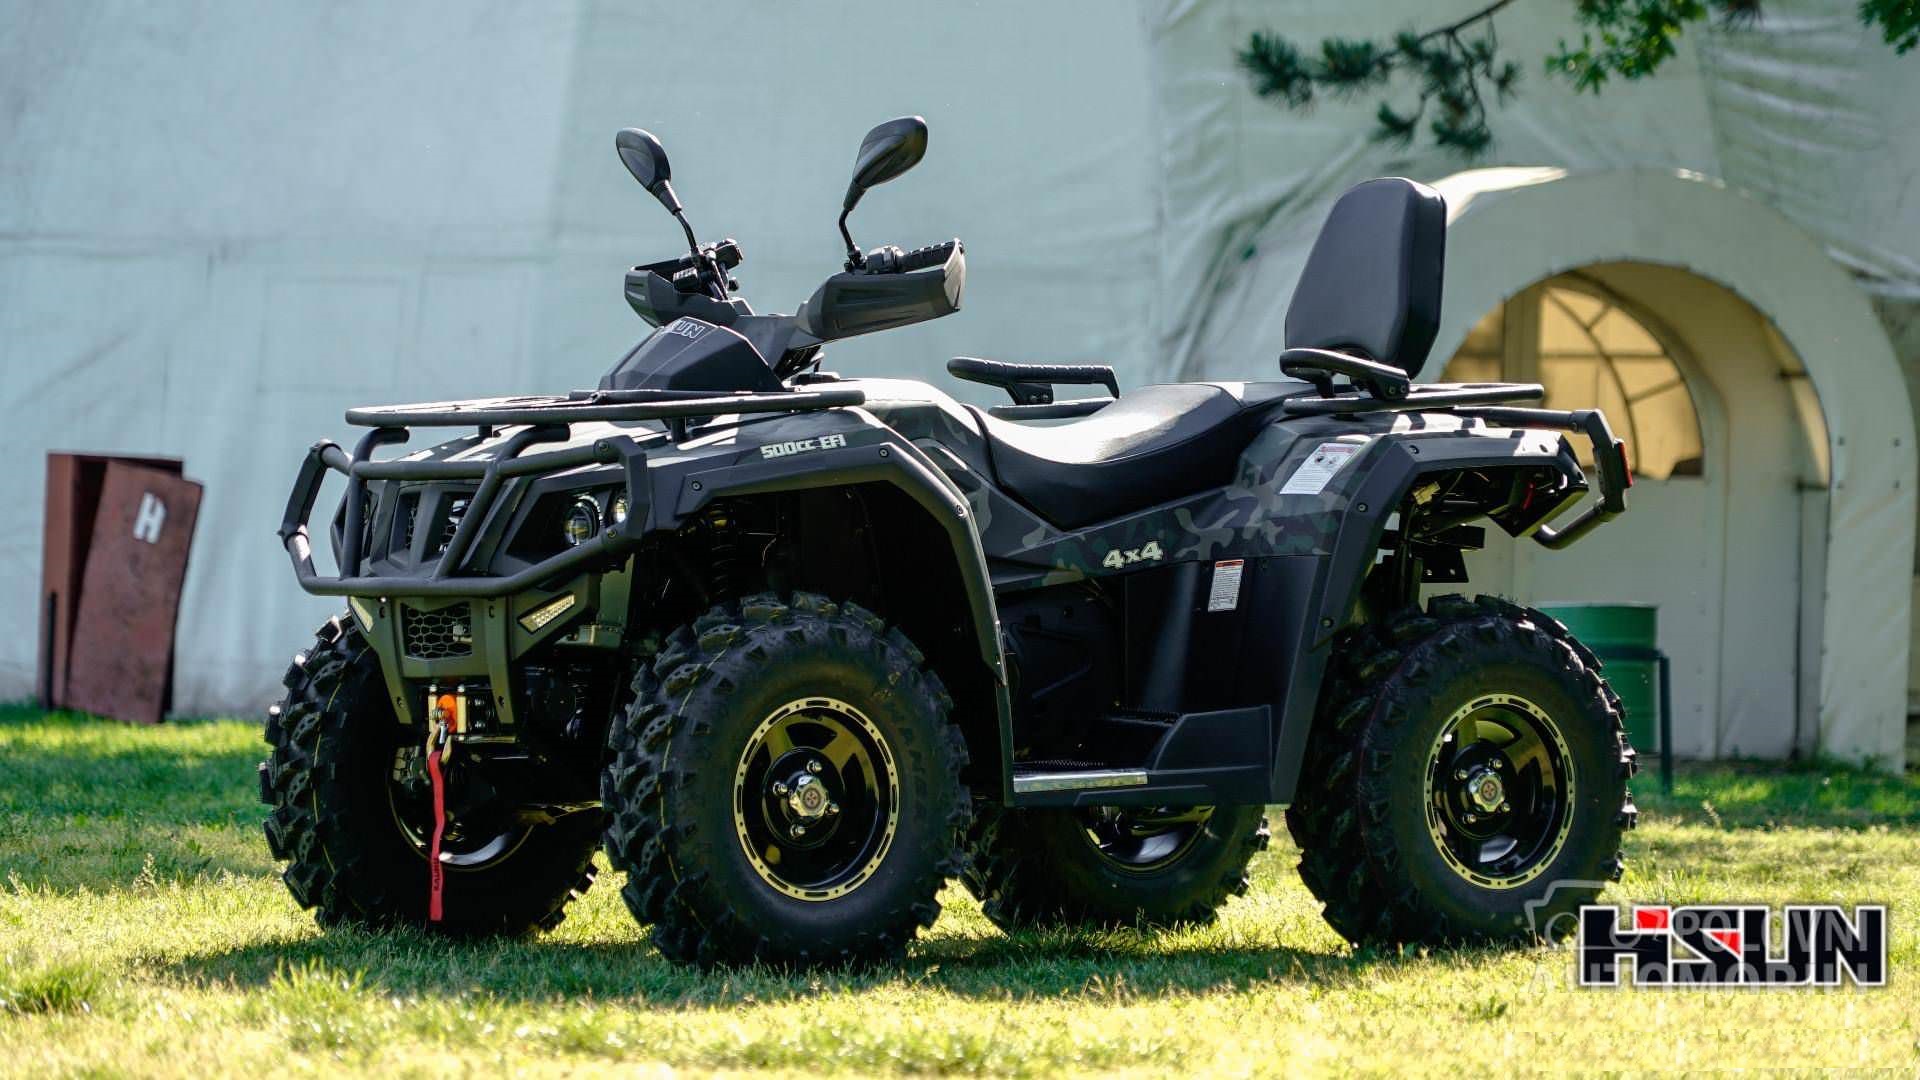 4 x 4 ATV Quad 550ccm HS 550 von Hisun + Seilwinde + AHK + EFI